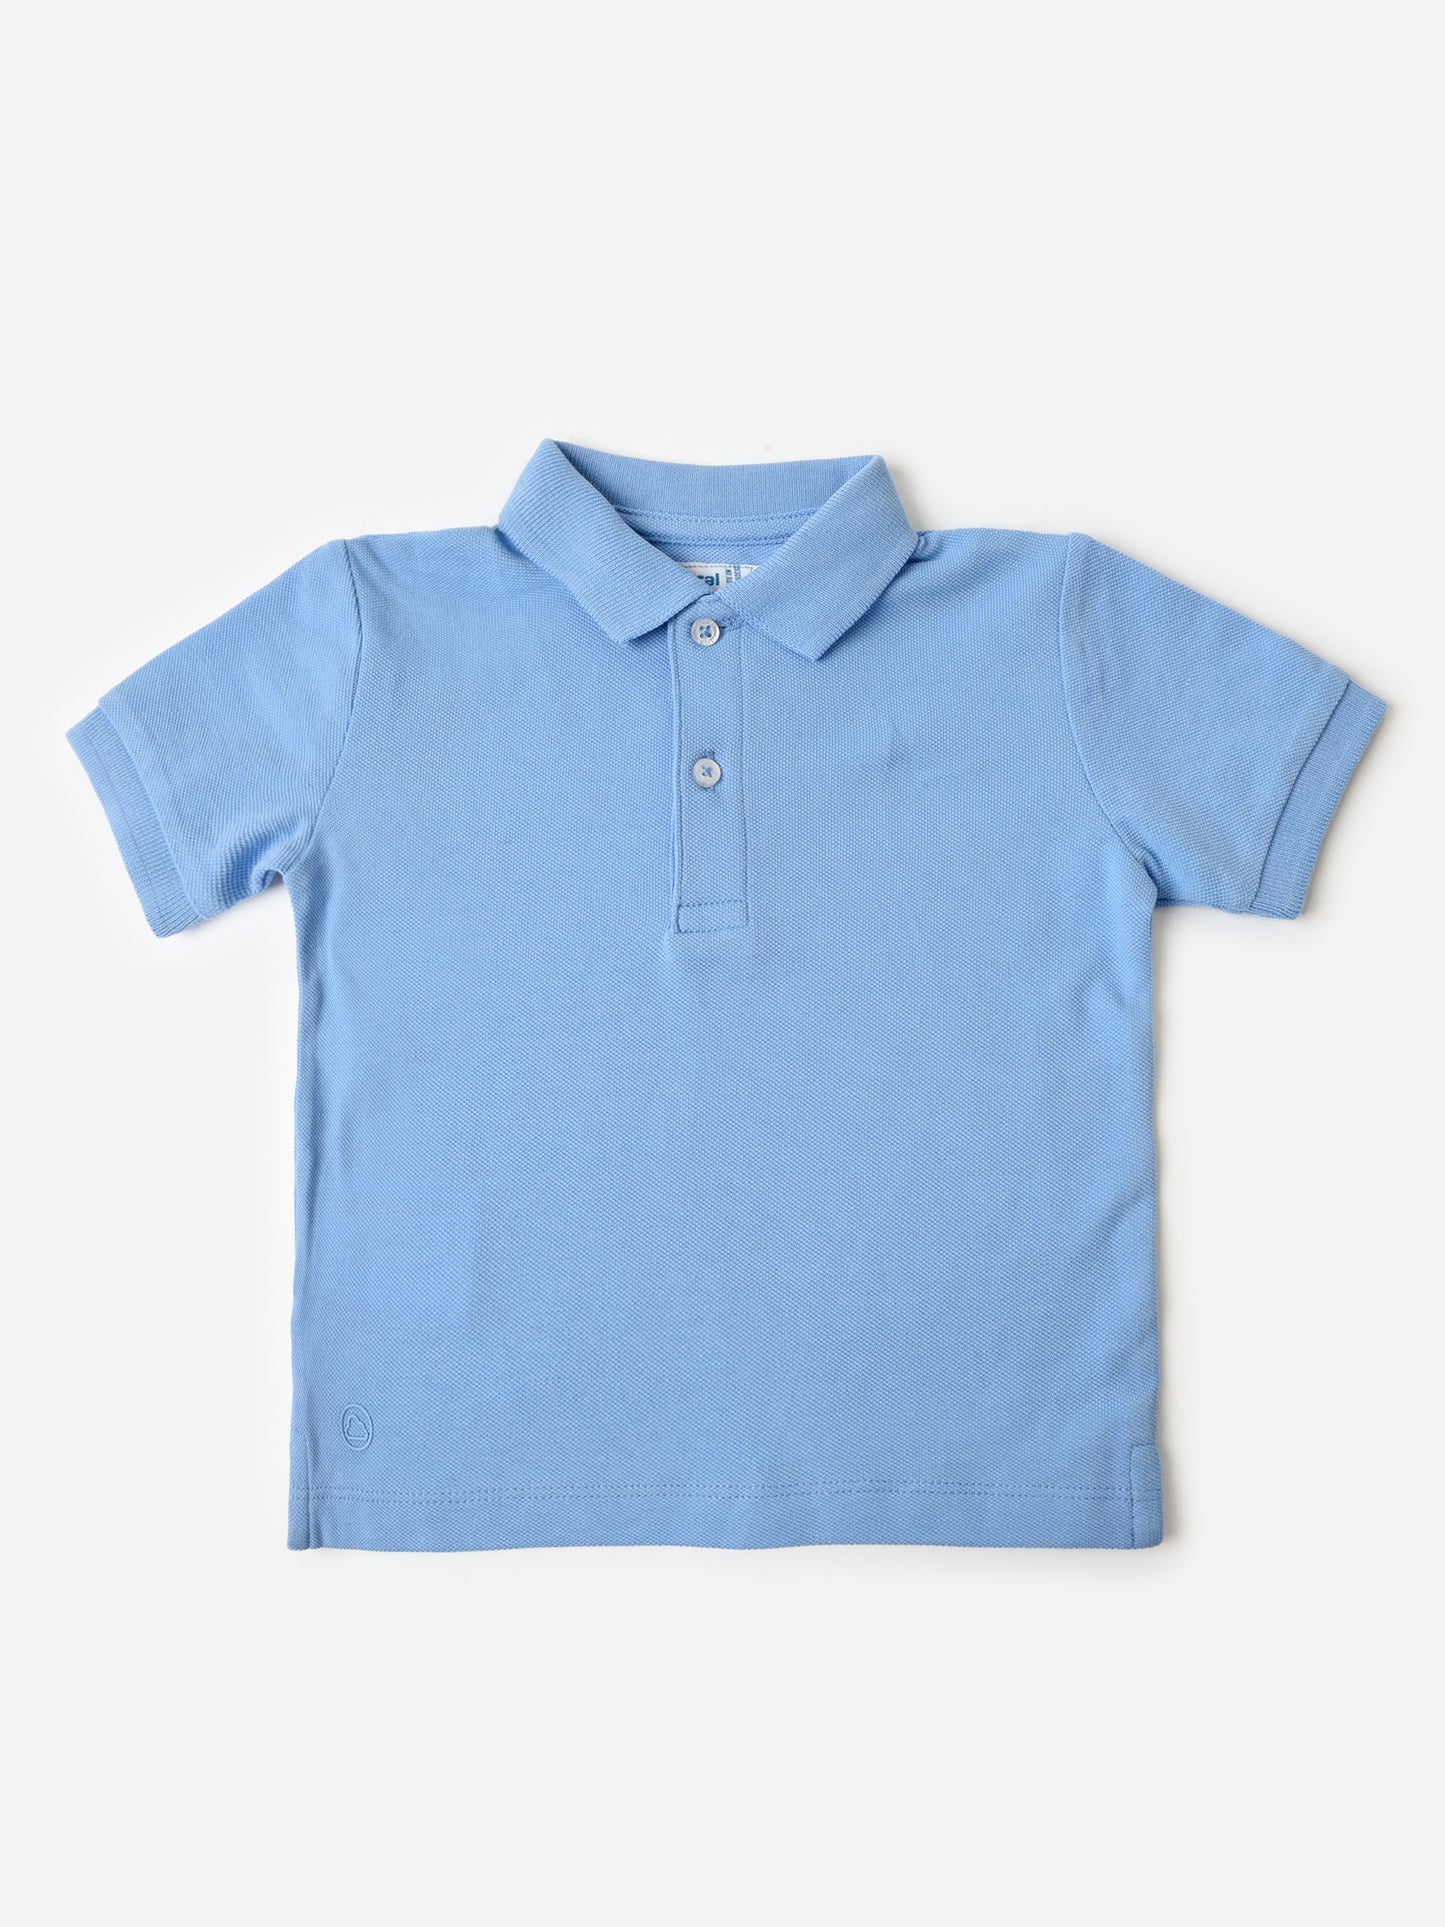 Mayoral Baby Boys' Basic Short Sleeve Polo